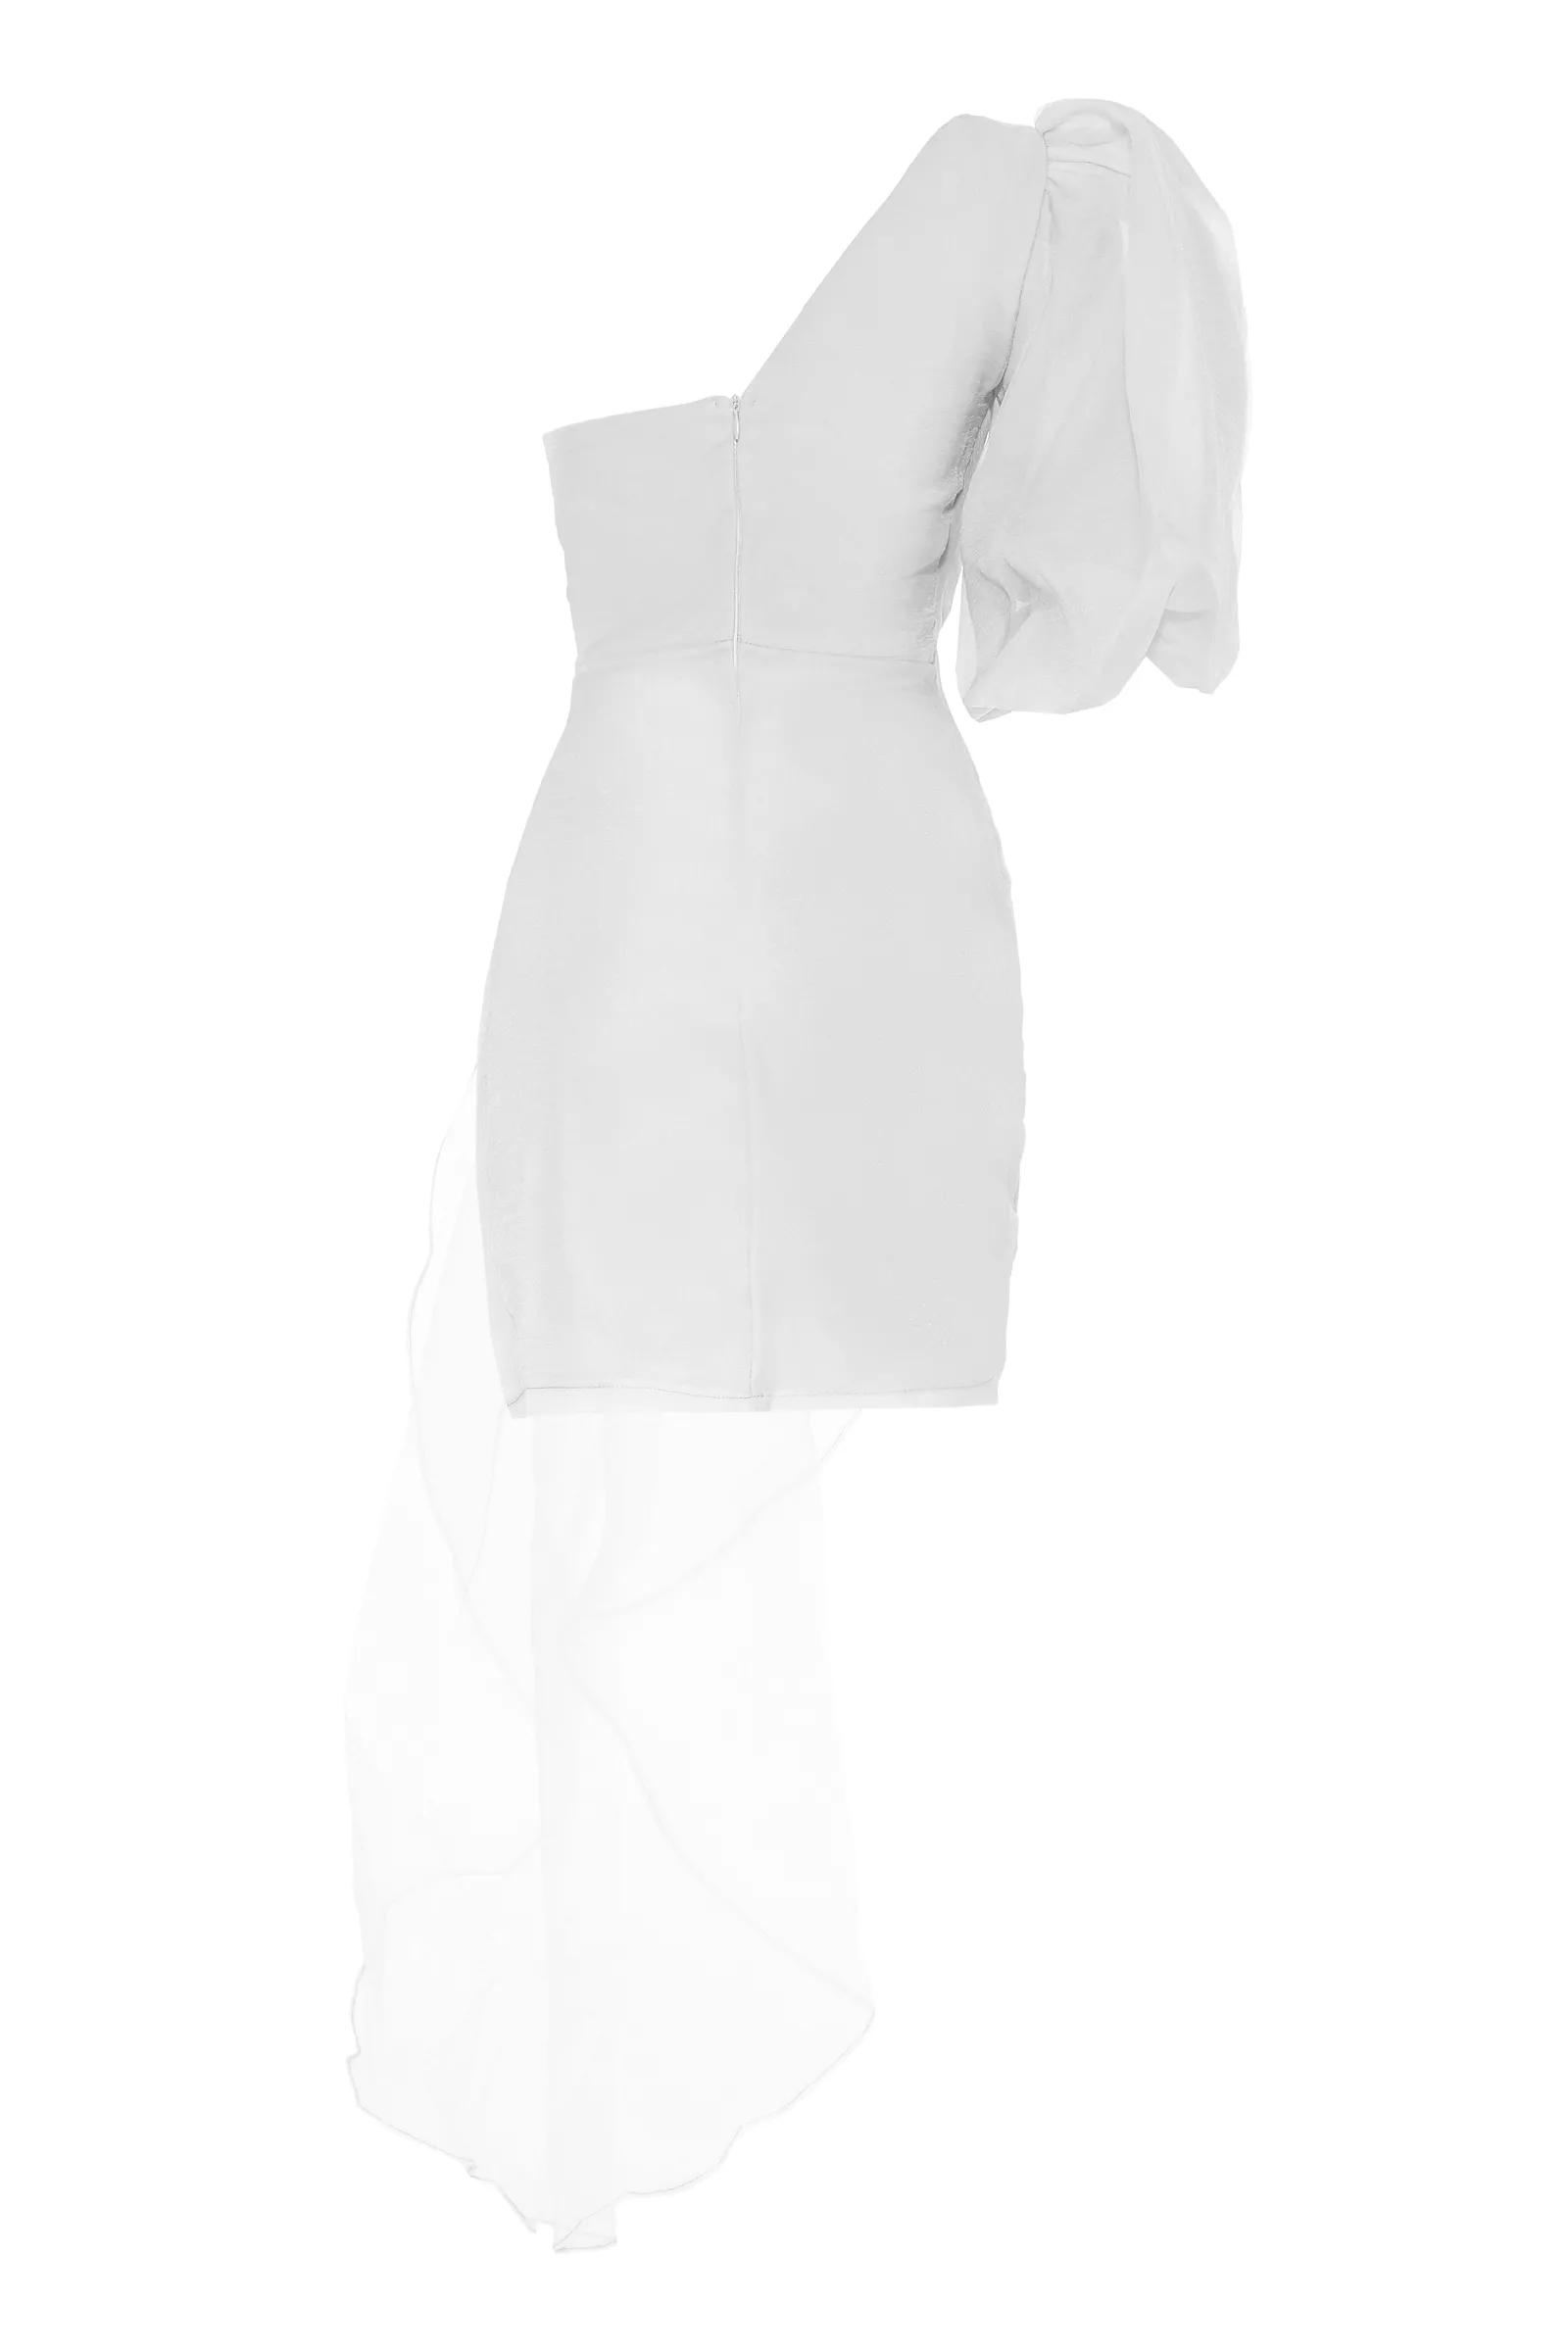 White tulle one arm mini dress